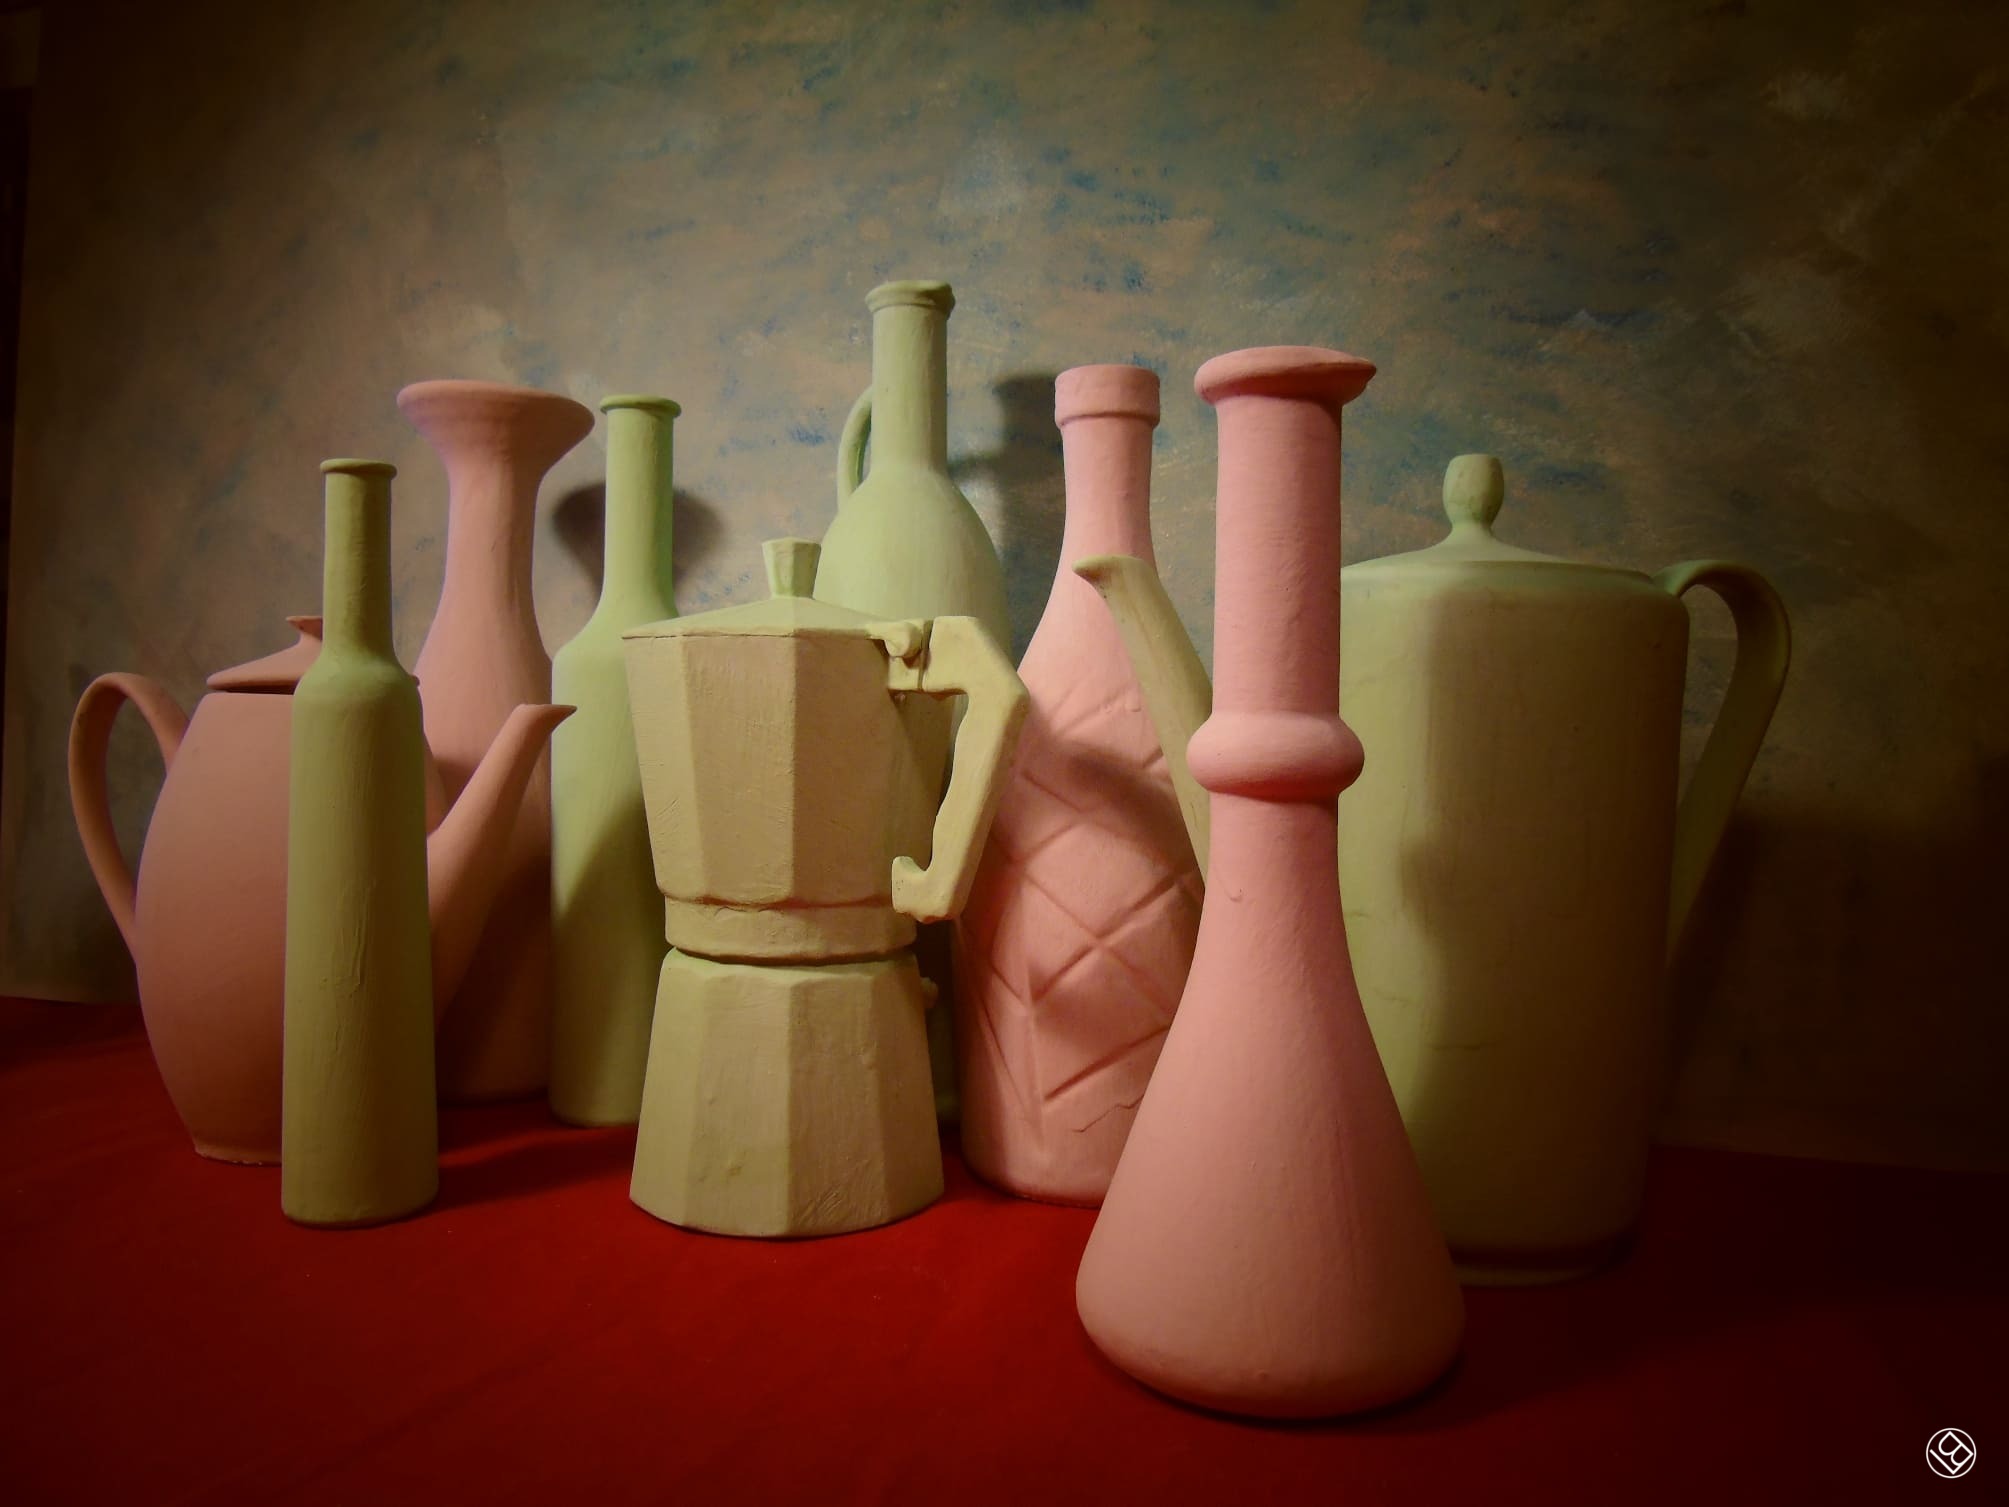 Le mie bottiglie in omaggio a Giorgio Morandi - 12